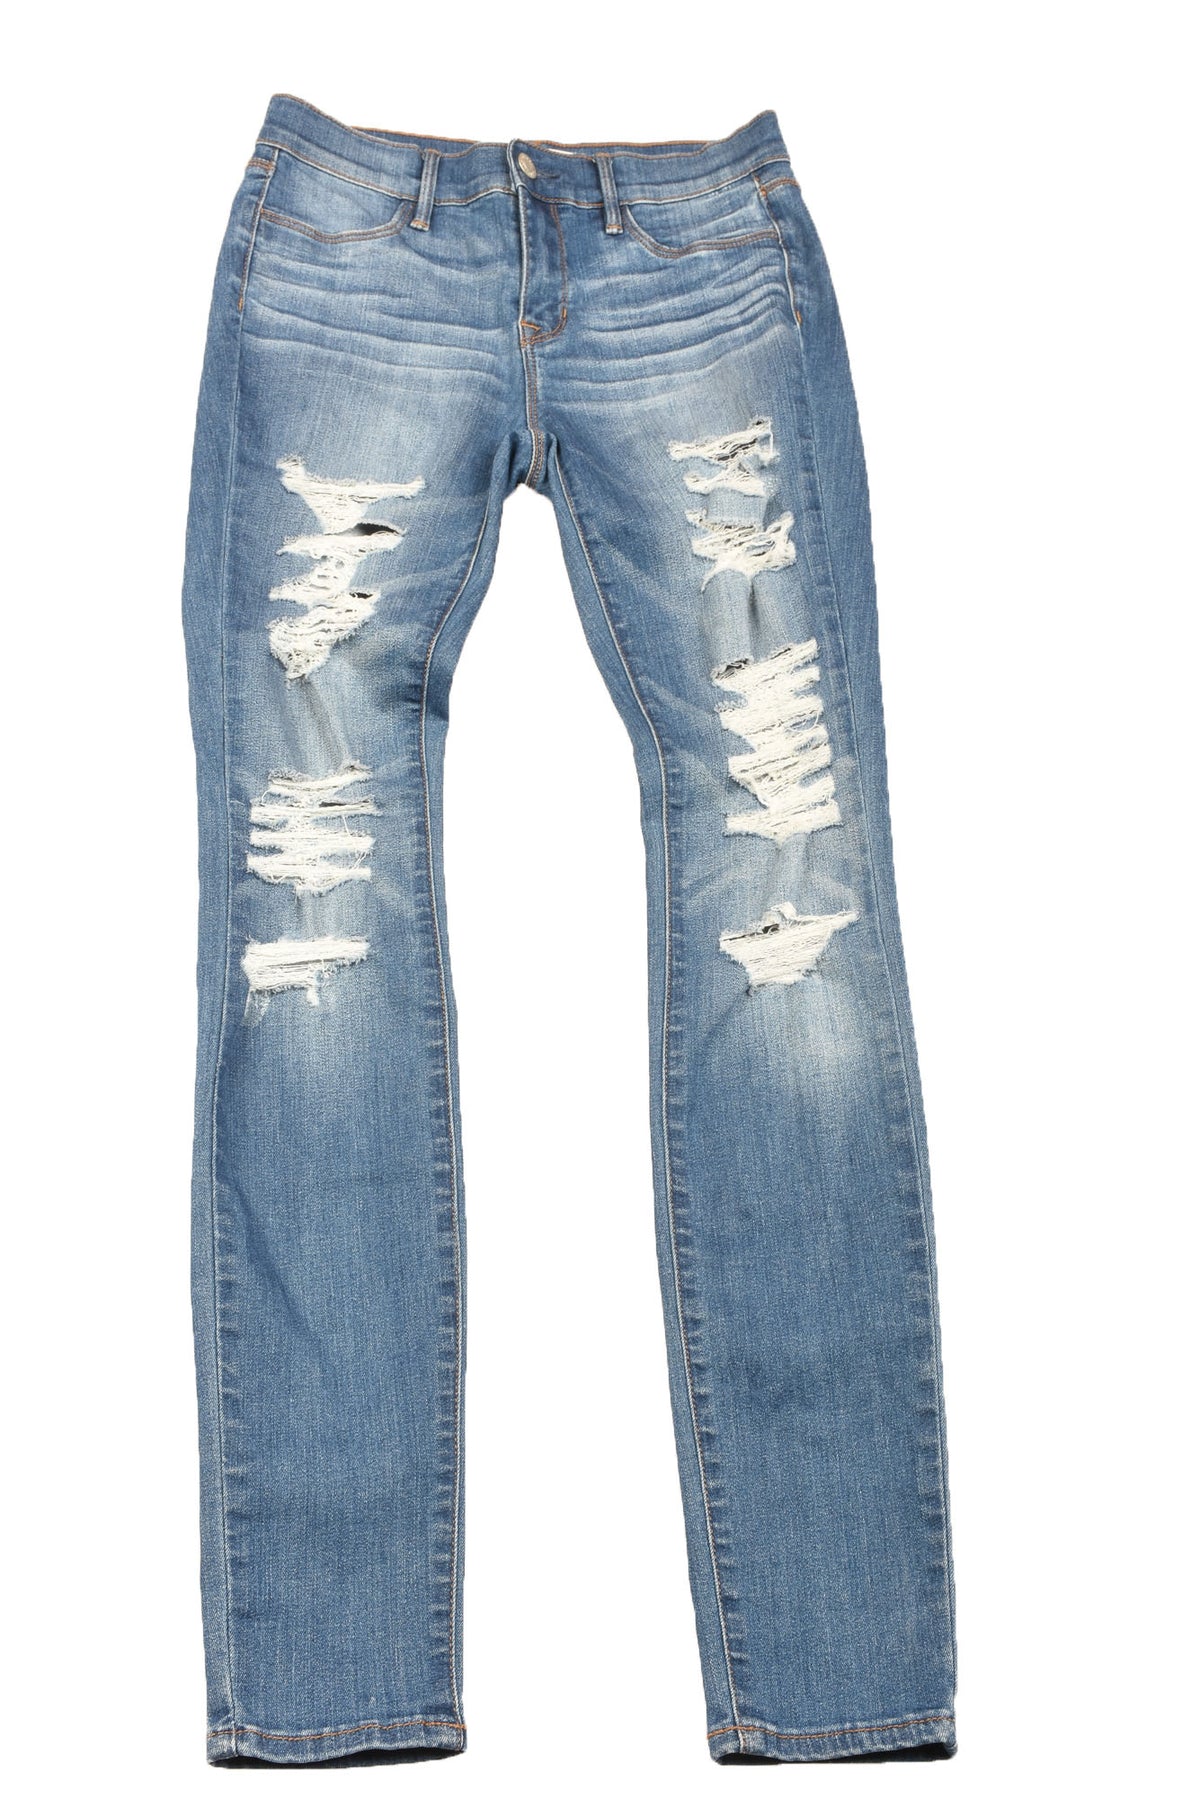 Pacsun Size 25 Long Women&#39;s Jeans